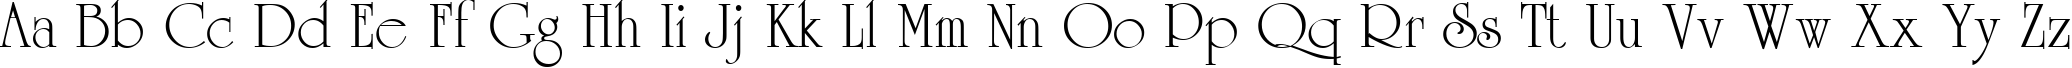 Пример написания английского алфавита шрифтом CyrillicUniversity